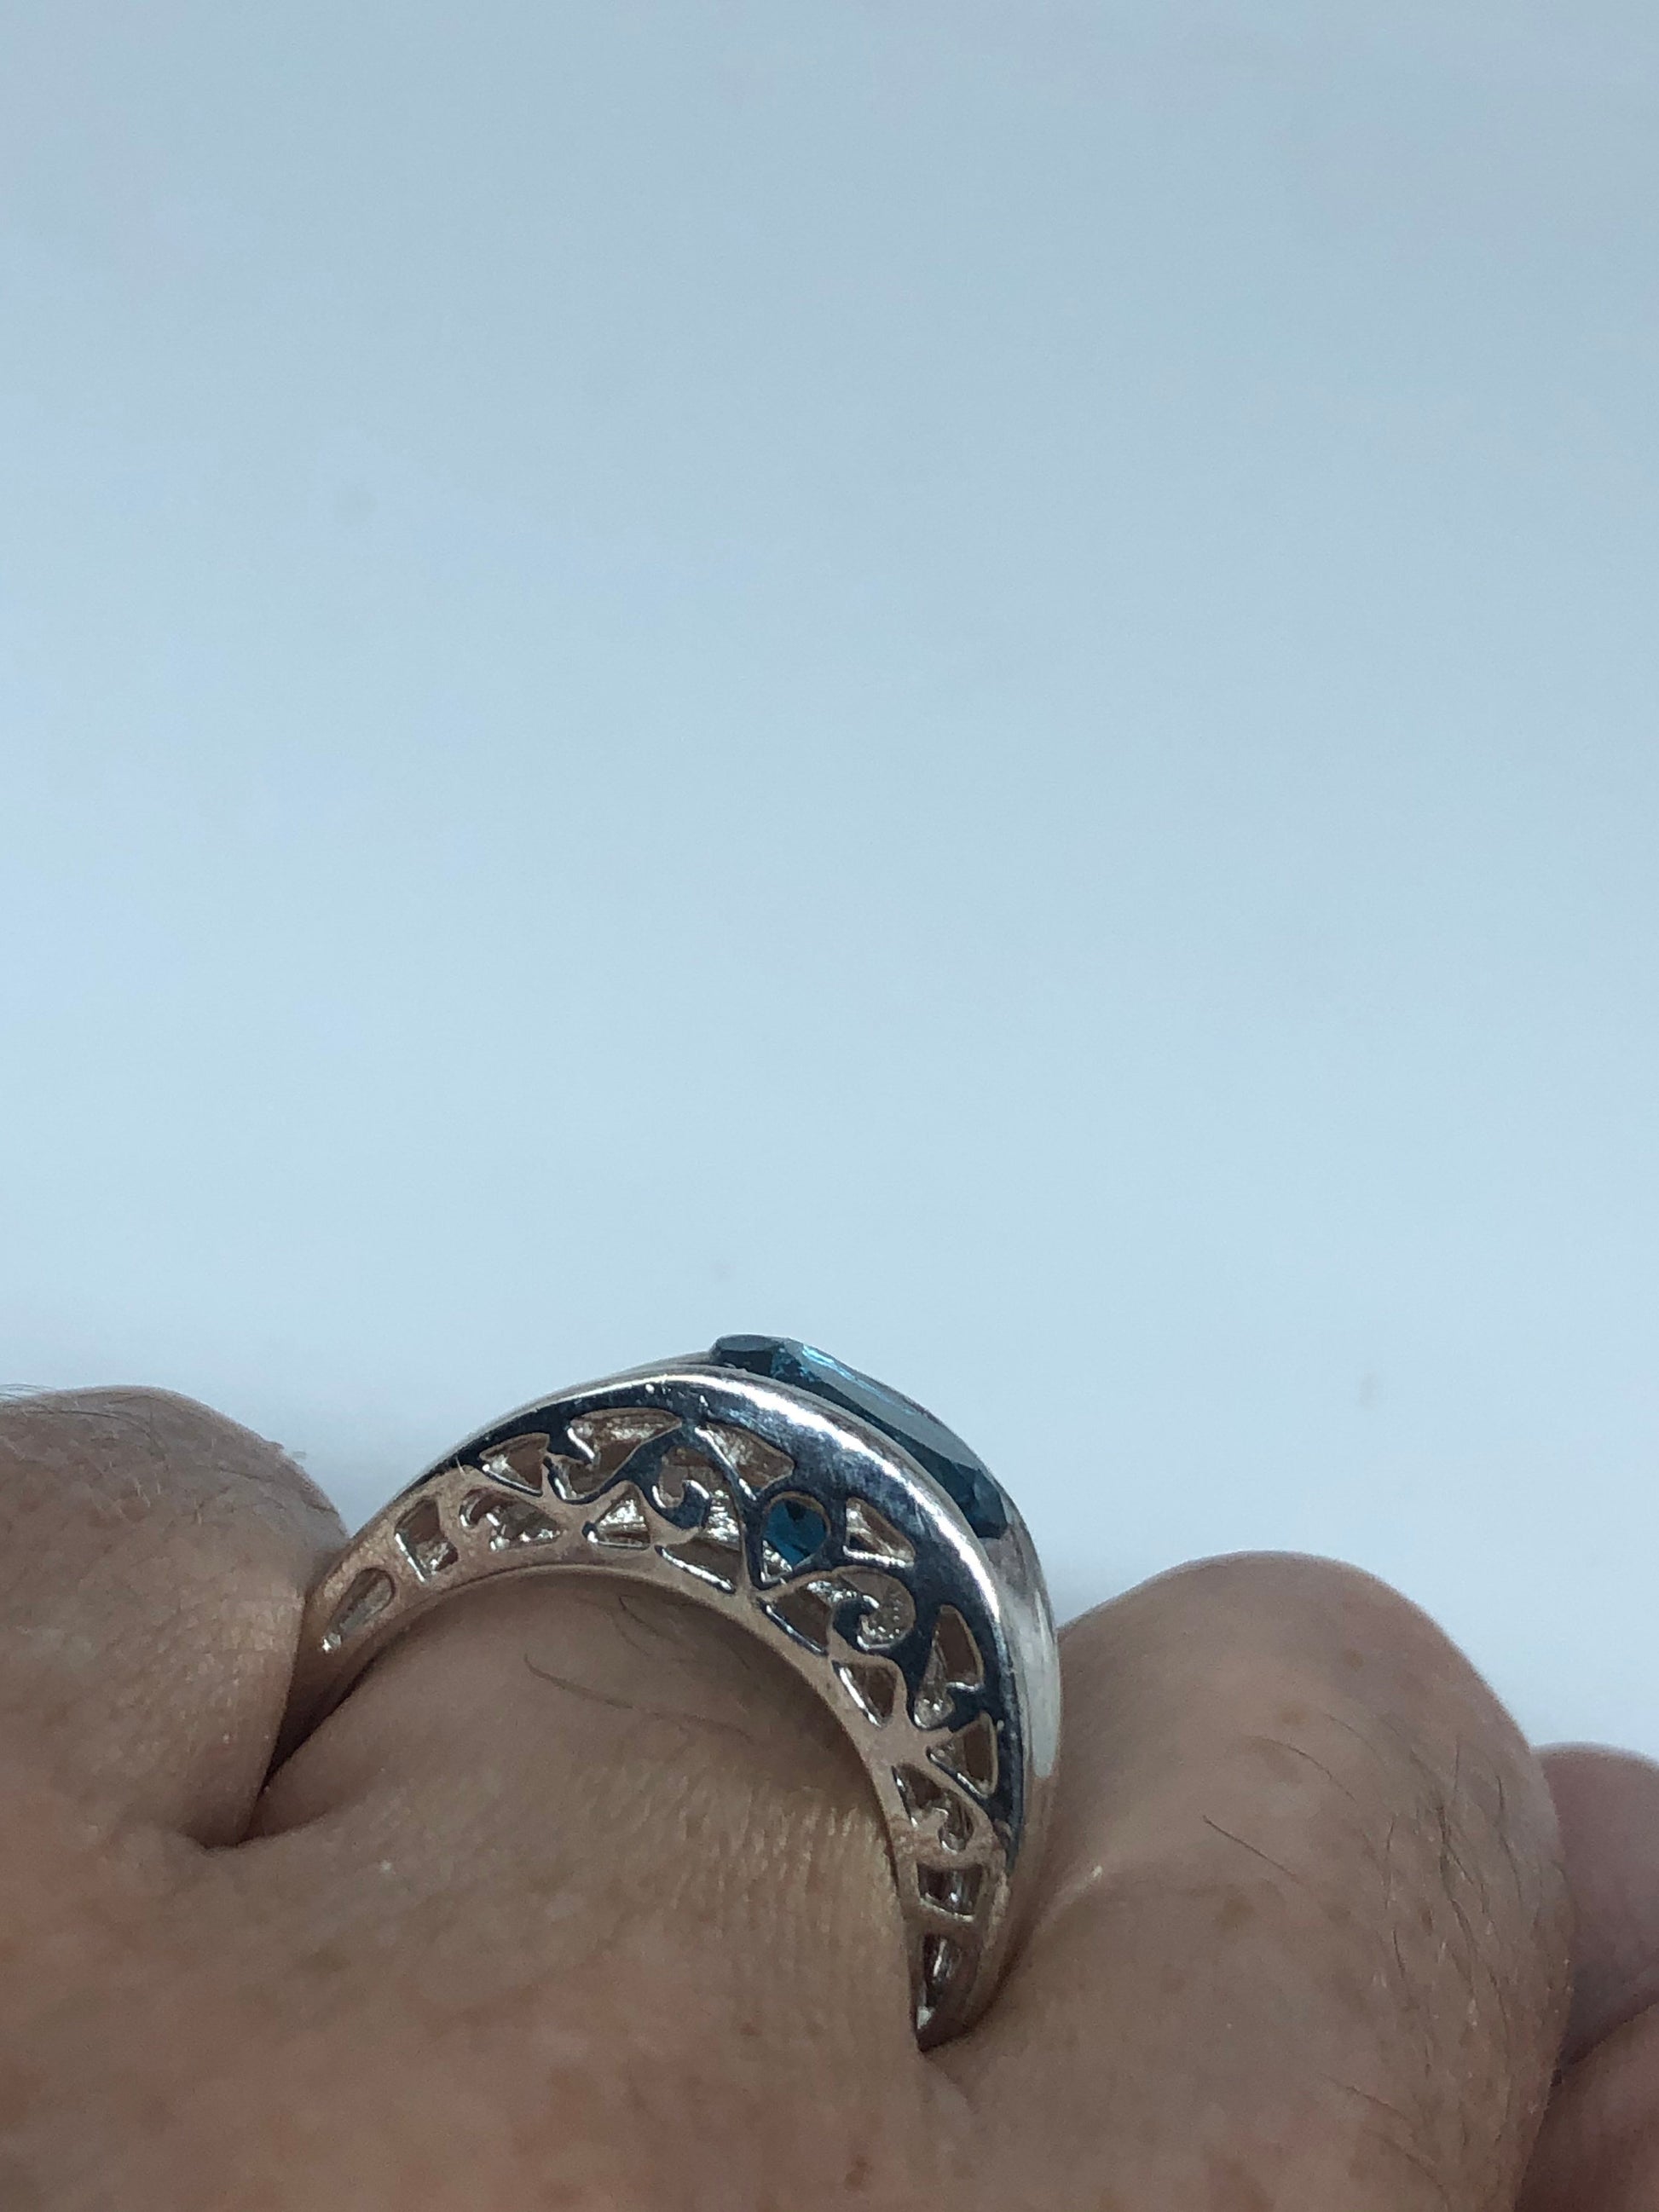 Vintage geniune blue topaz 925 sterling silver Ring Size 8